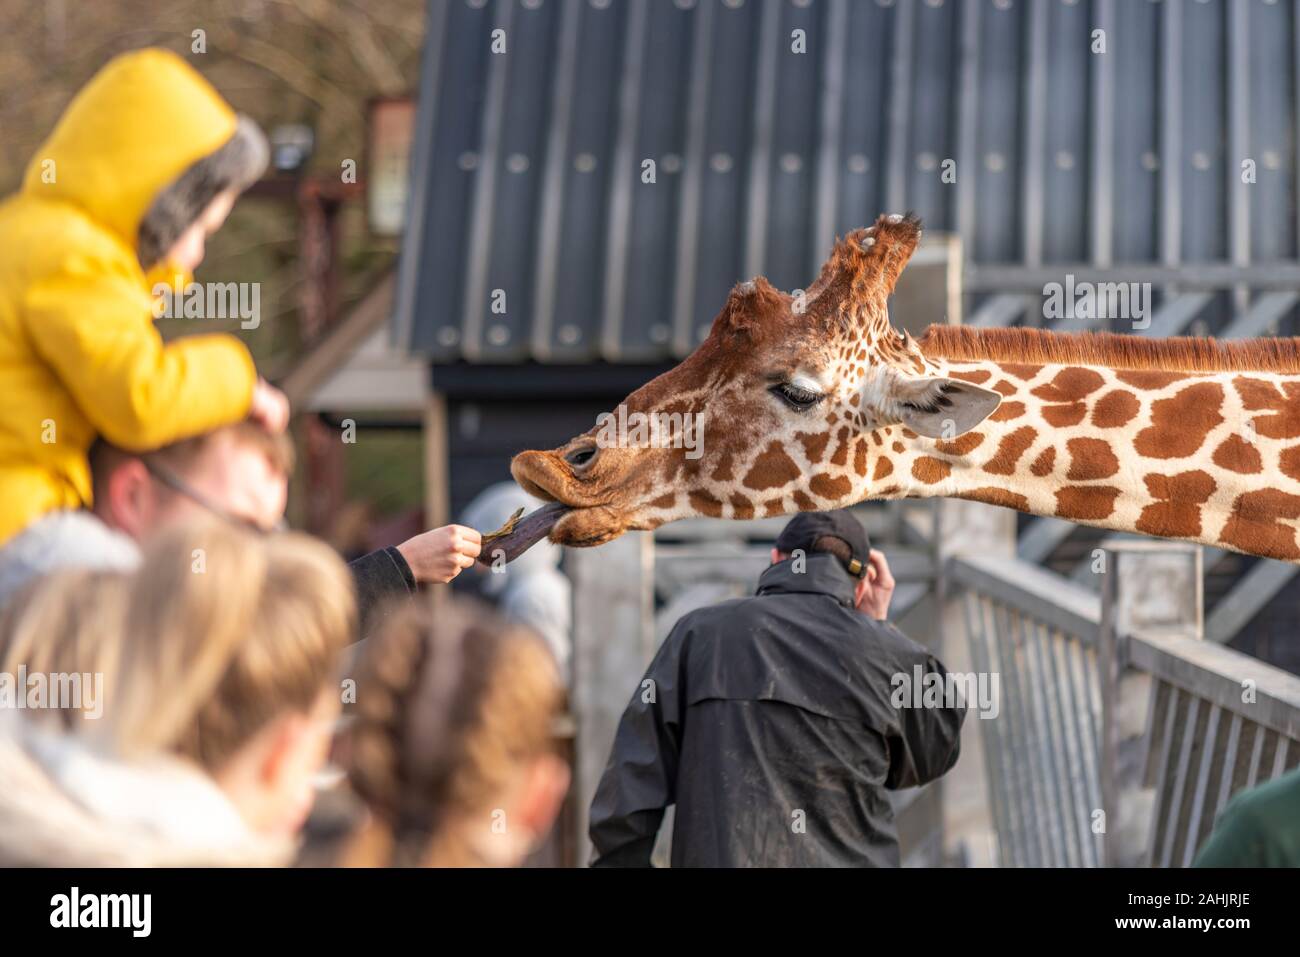 Die Fütterung der Giraffen im Zoo in Colchester, Essex, UK. Netzgiraffe, Giraffa Camelopardalis reticulata. Publikumsmagnet Besucher Fütterung der Tiere Stockfoto